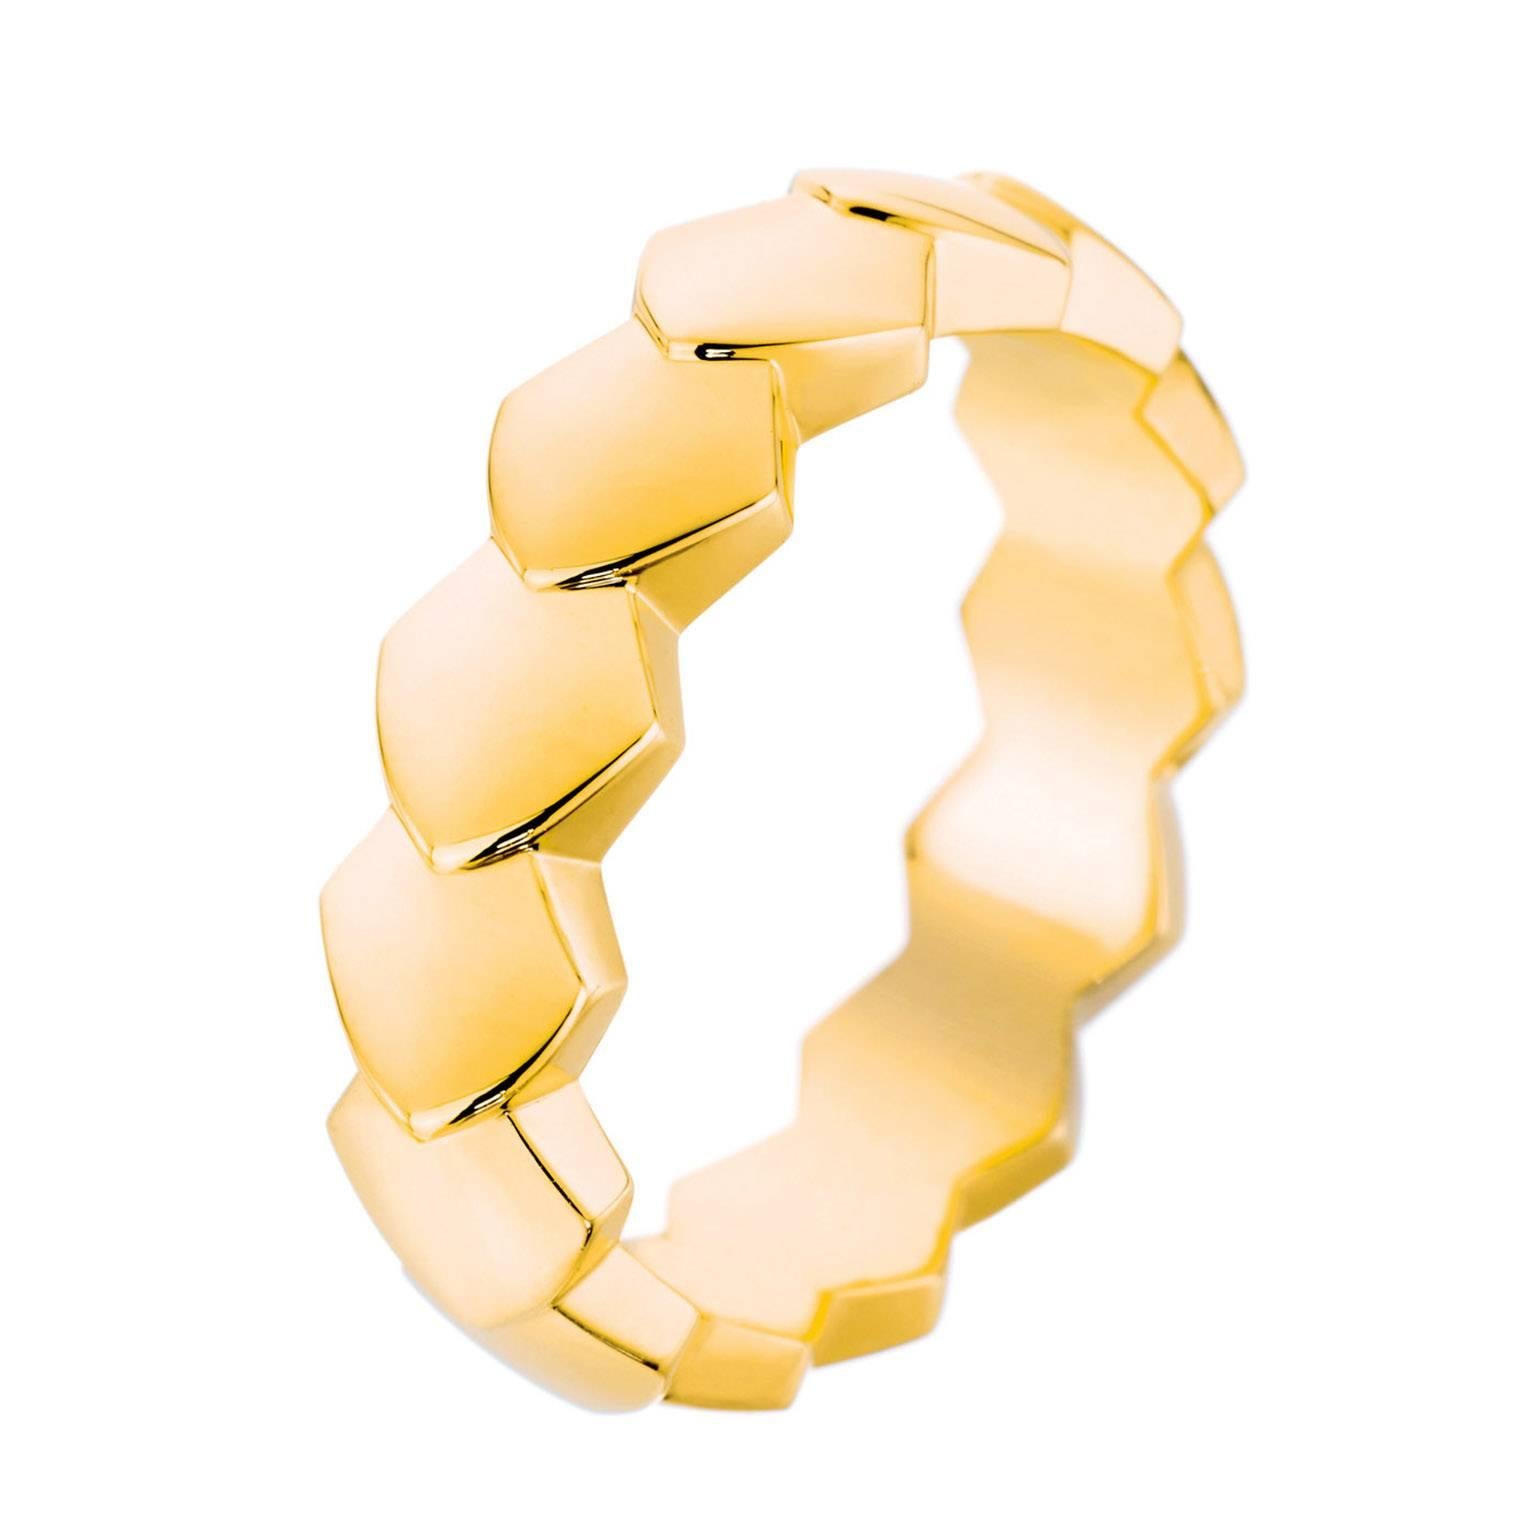 Akillis Python Ring 18 Karat Yellow Gold For Sale